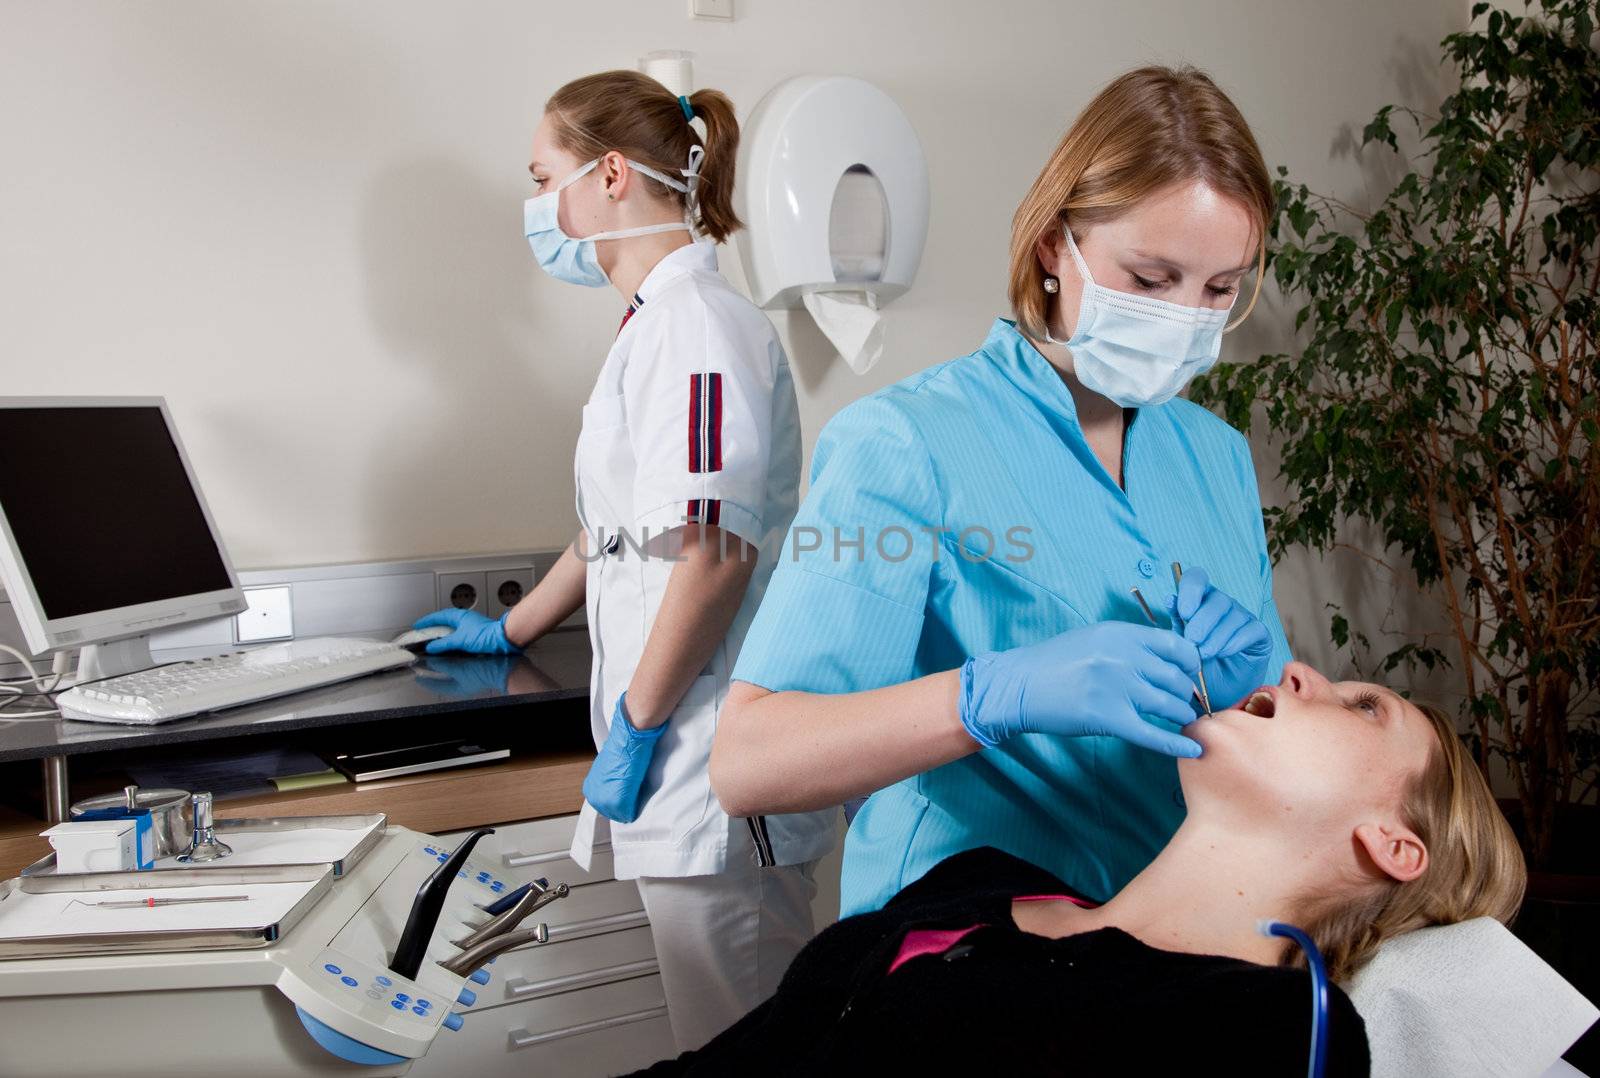 Dental clinic by Fotosmurf